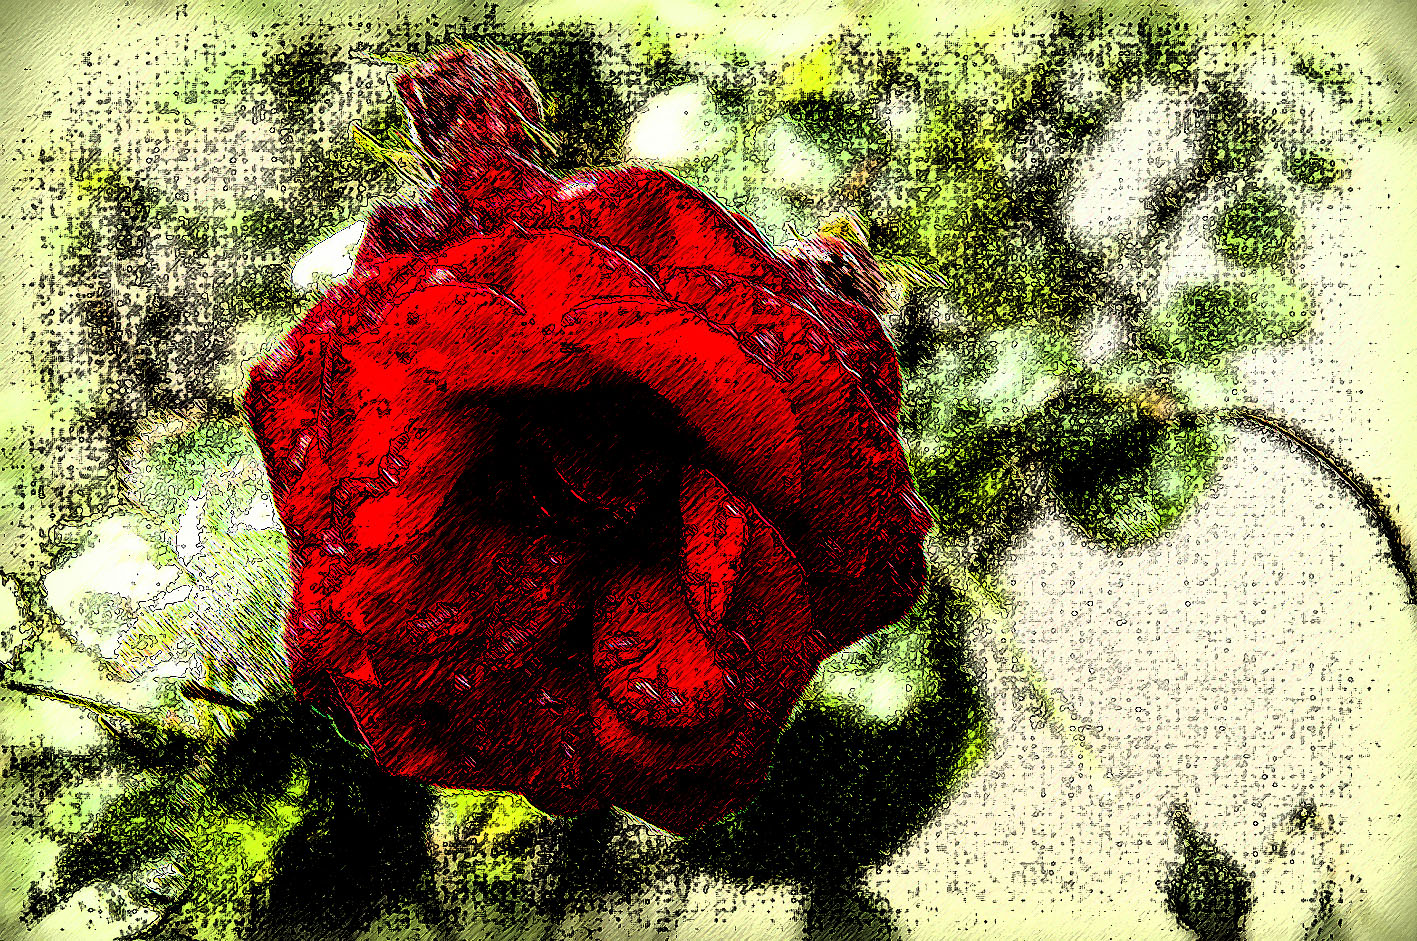 Last rose of summer...